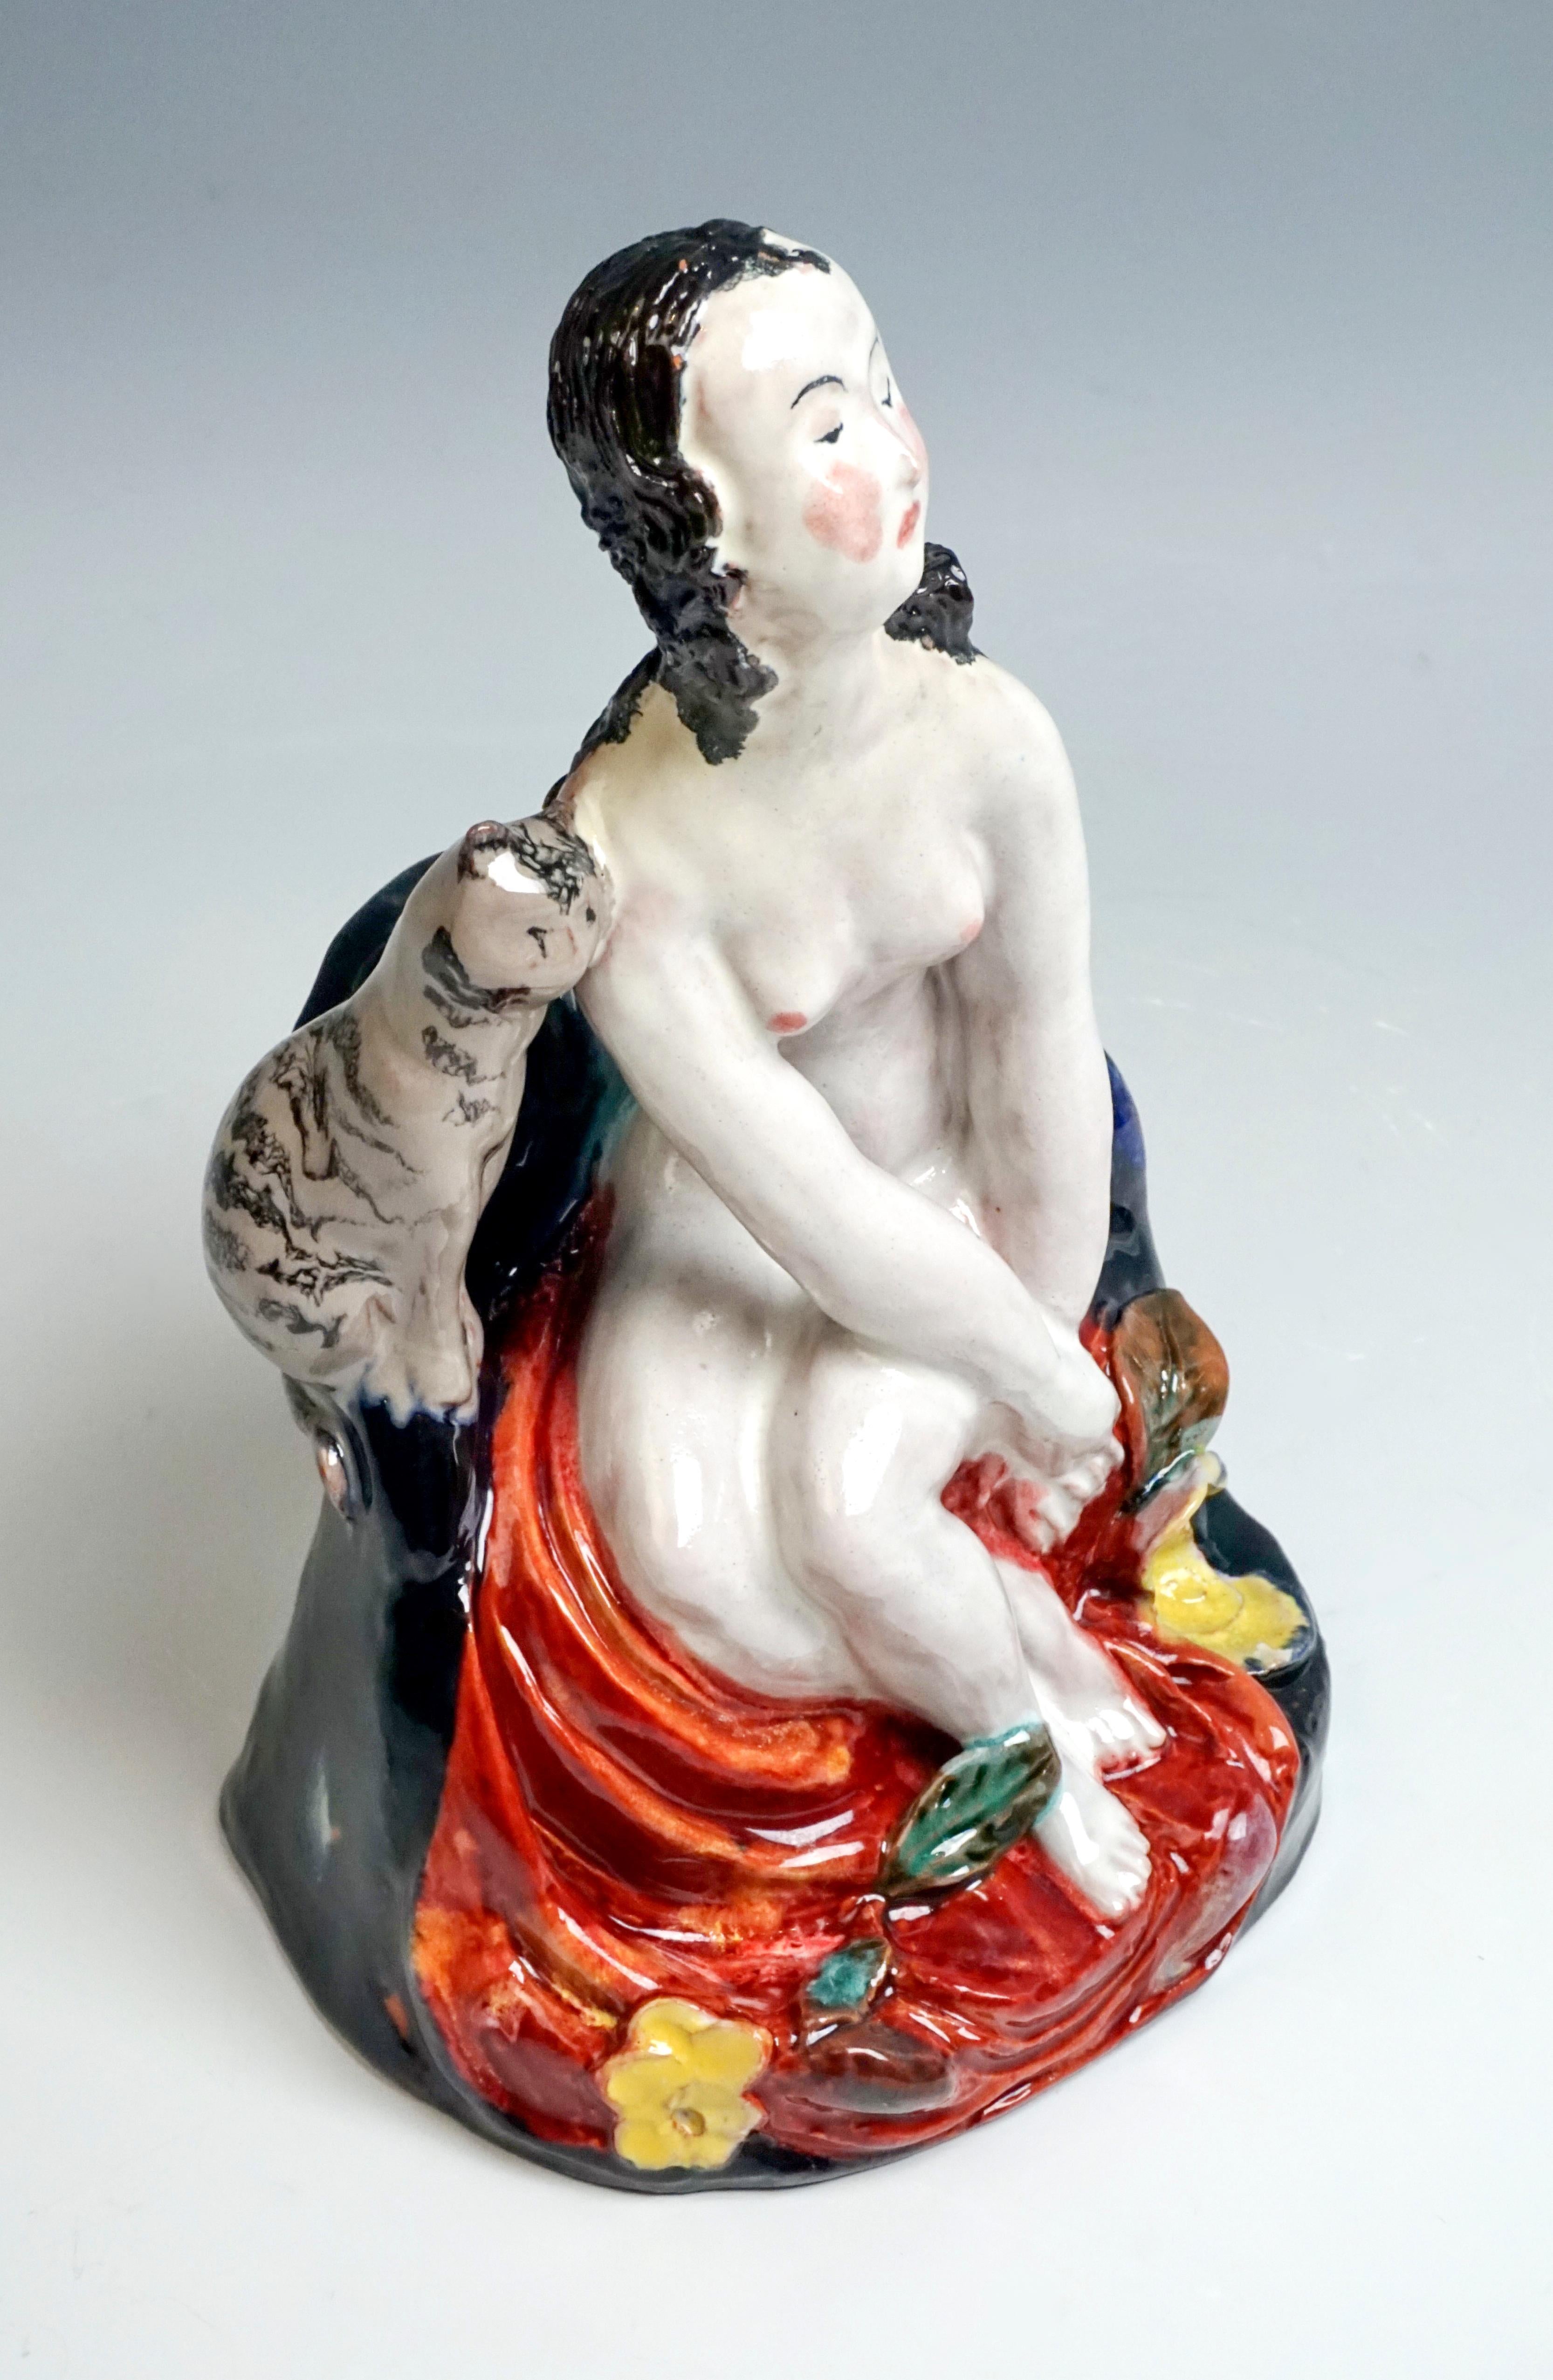 Austrian Wiener Werkstaette Expressive Vienna Ceramics Girl with Cat by Susi Singer, 1923